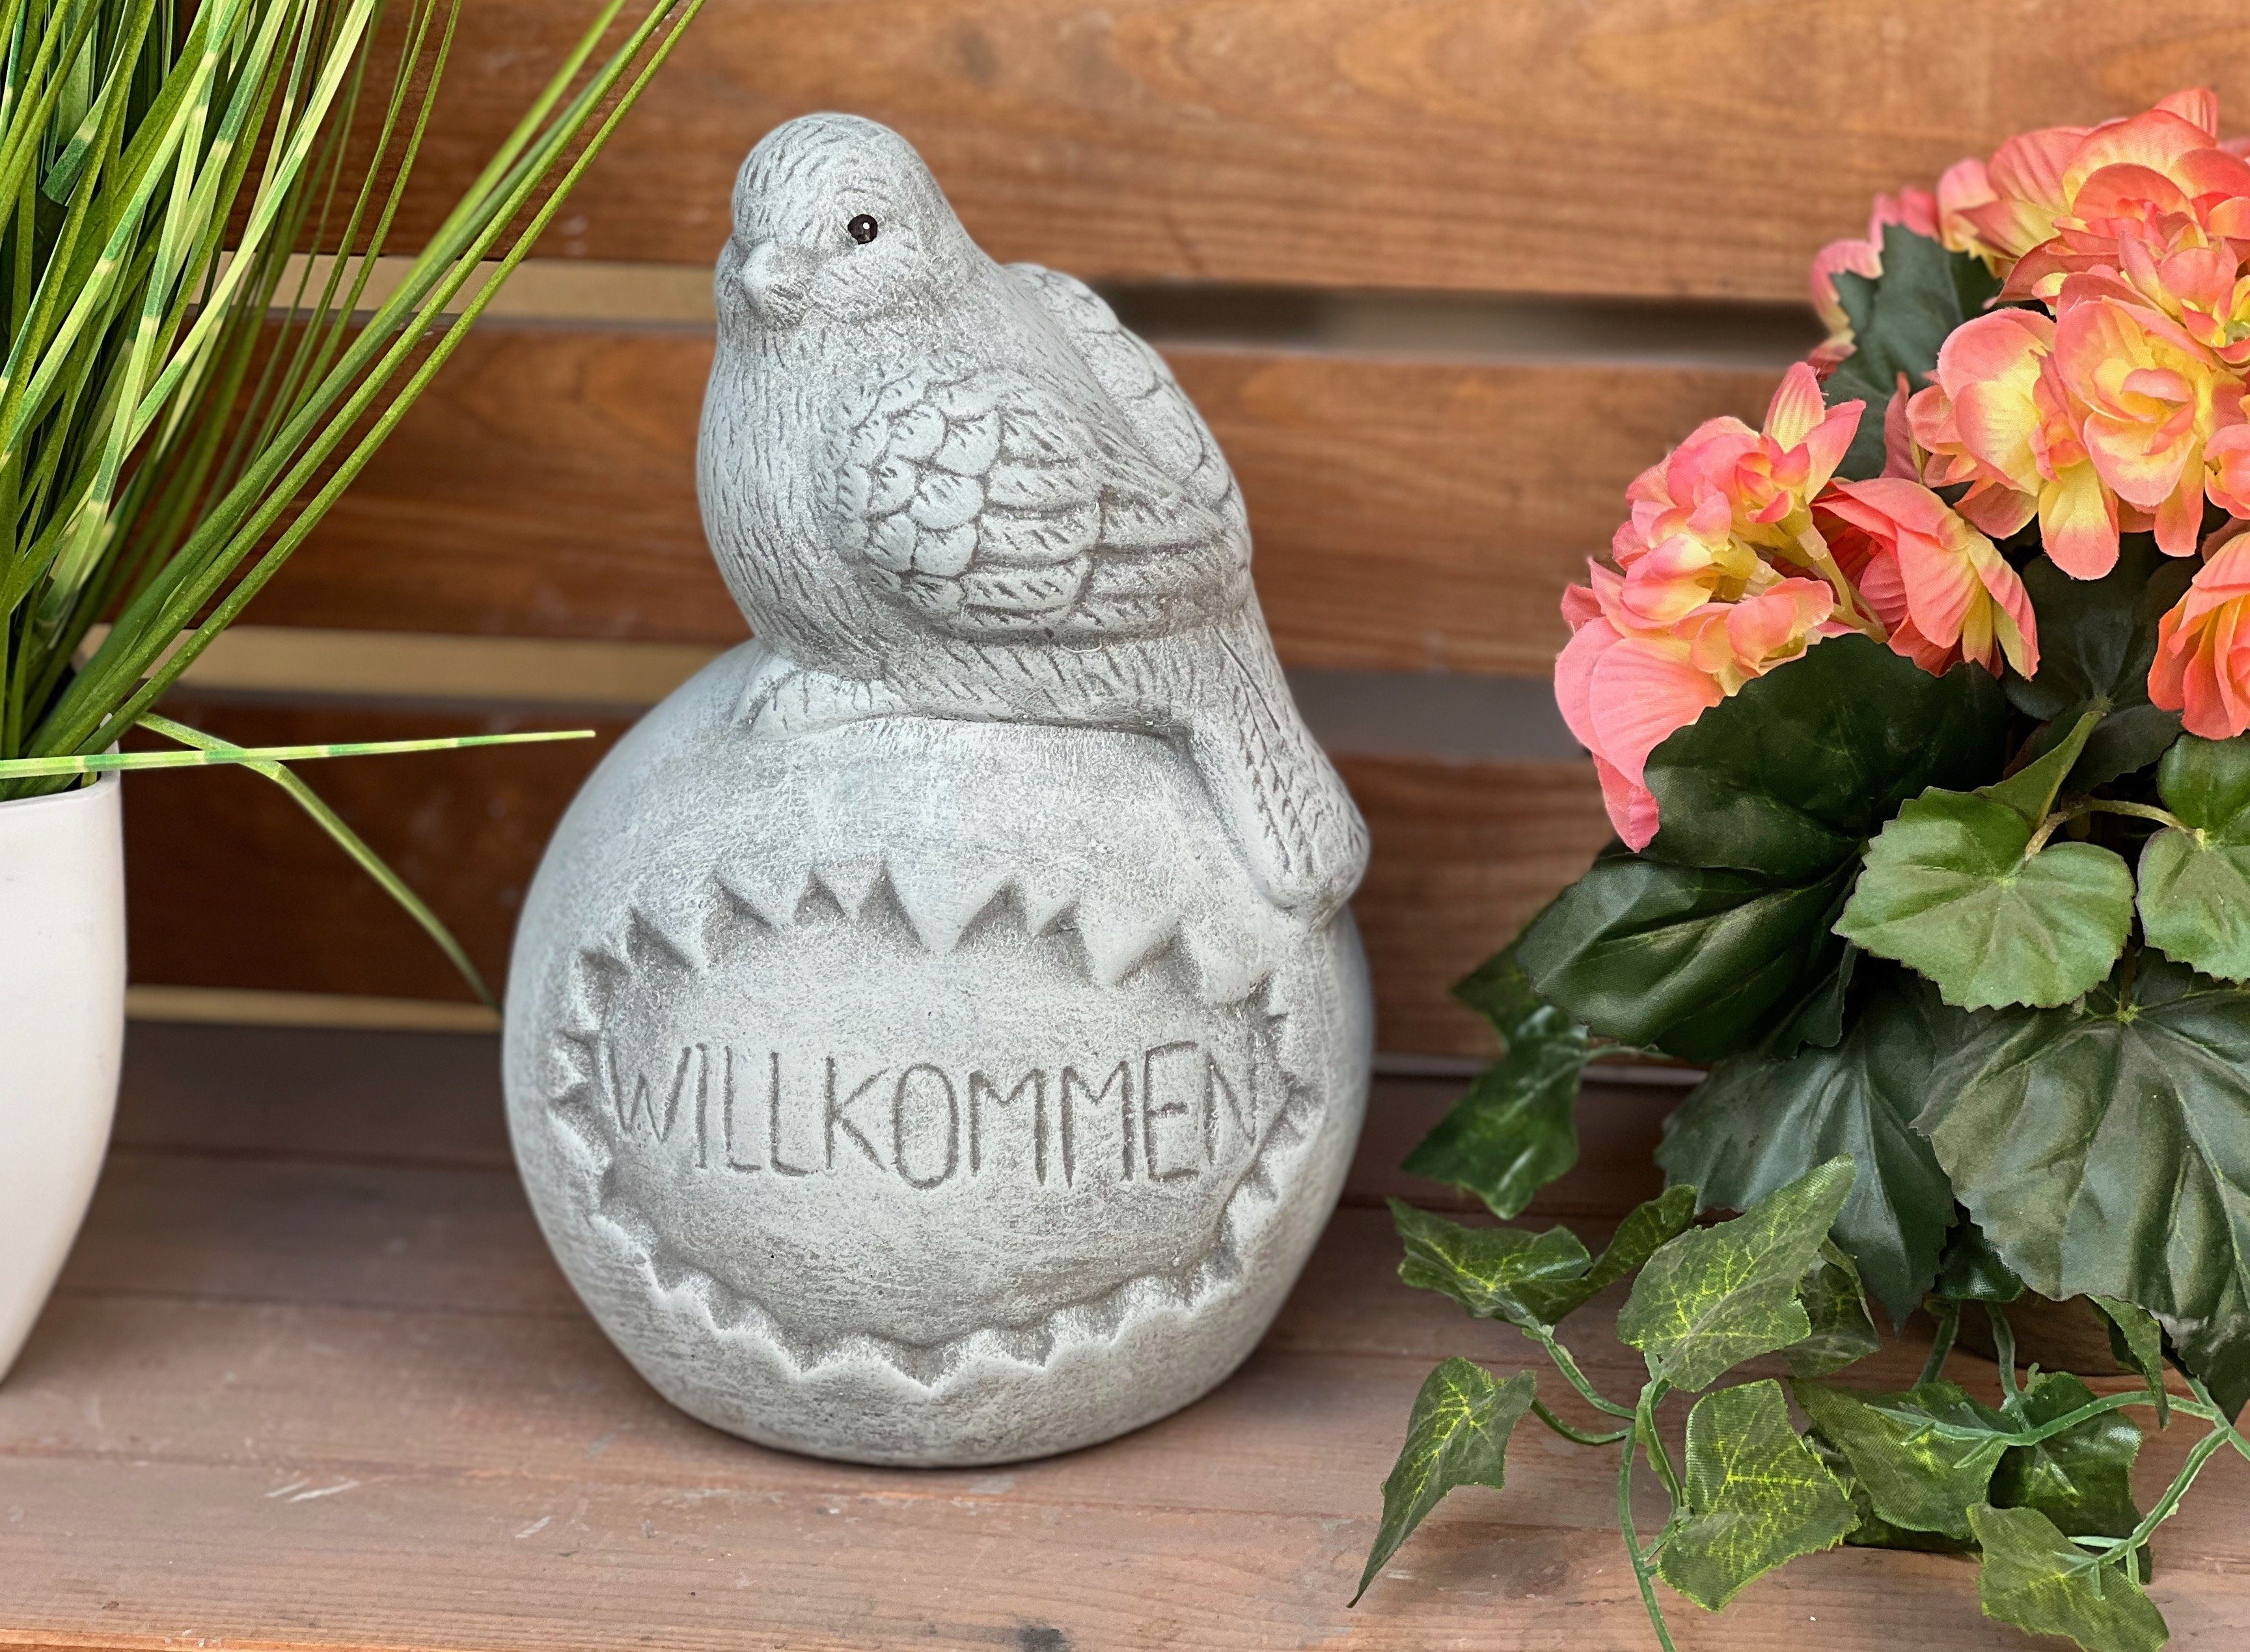 Stone and Style Gartenfigur Steinfigur Kugel auf Steinguss Vogel "Willkommen", frostfest